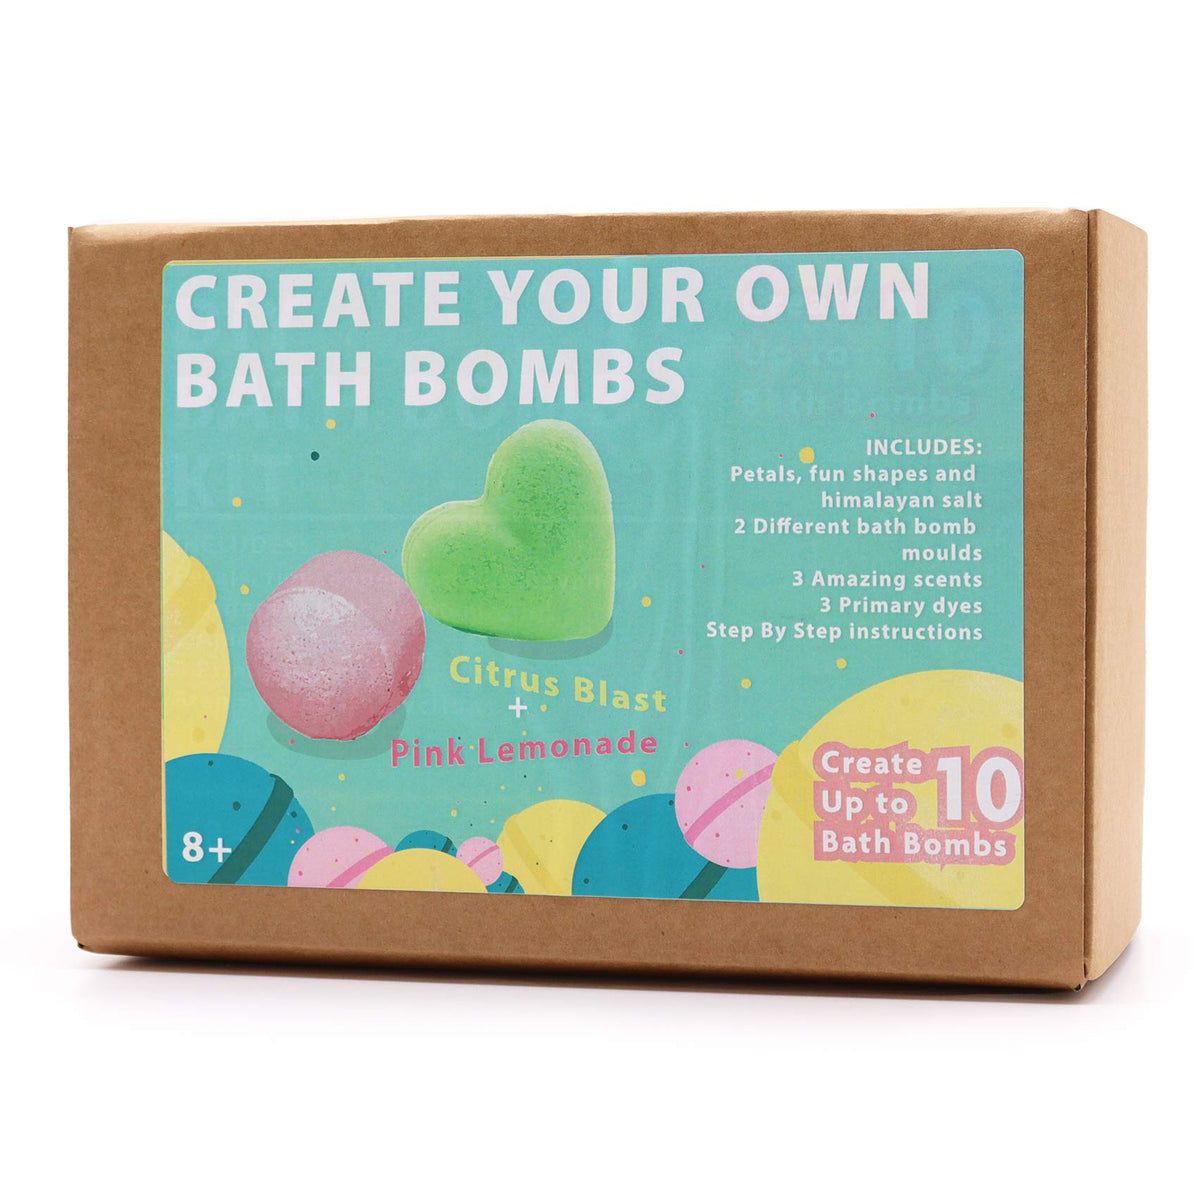 DIY Bath Bomb Kit